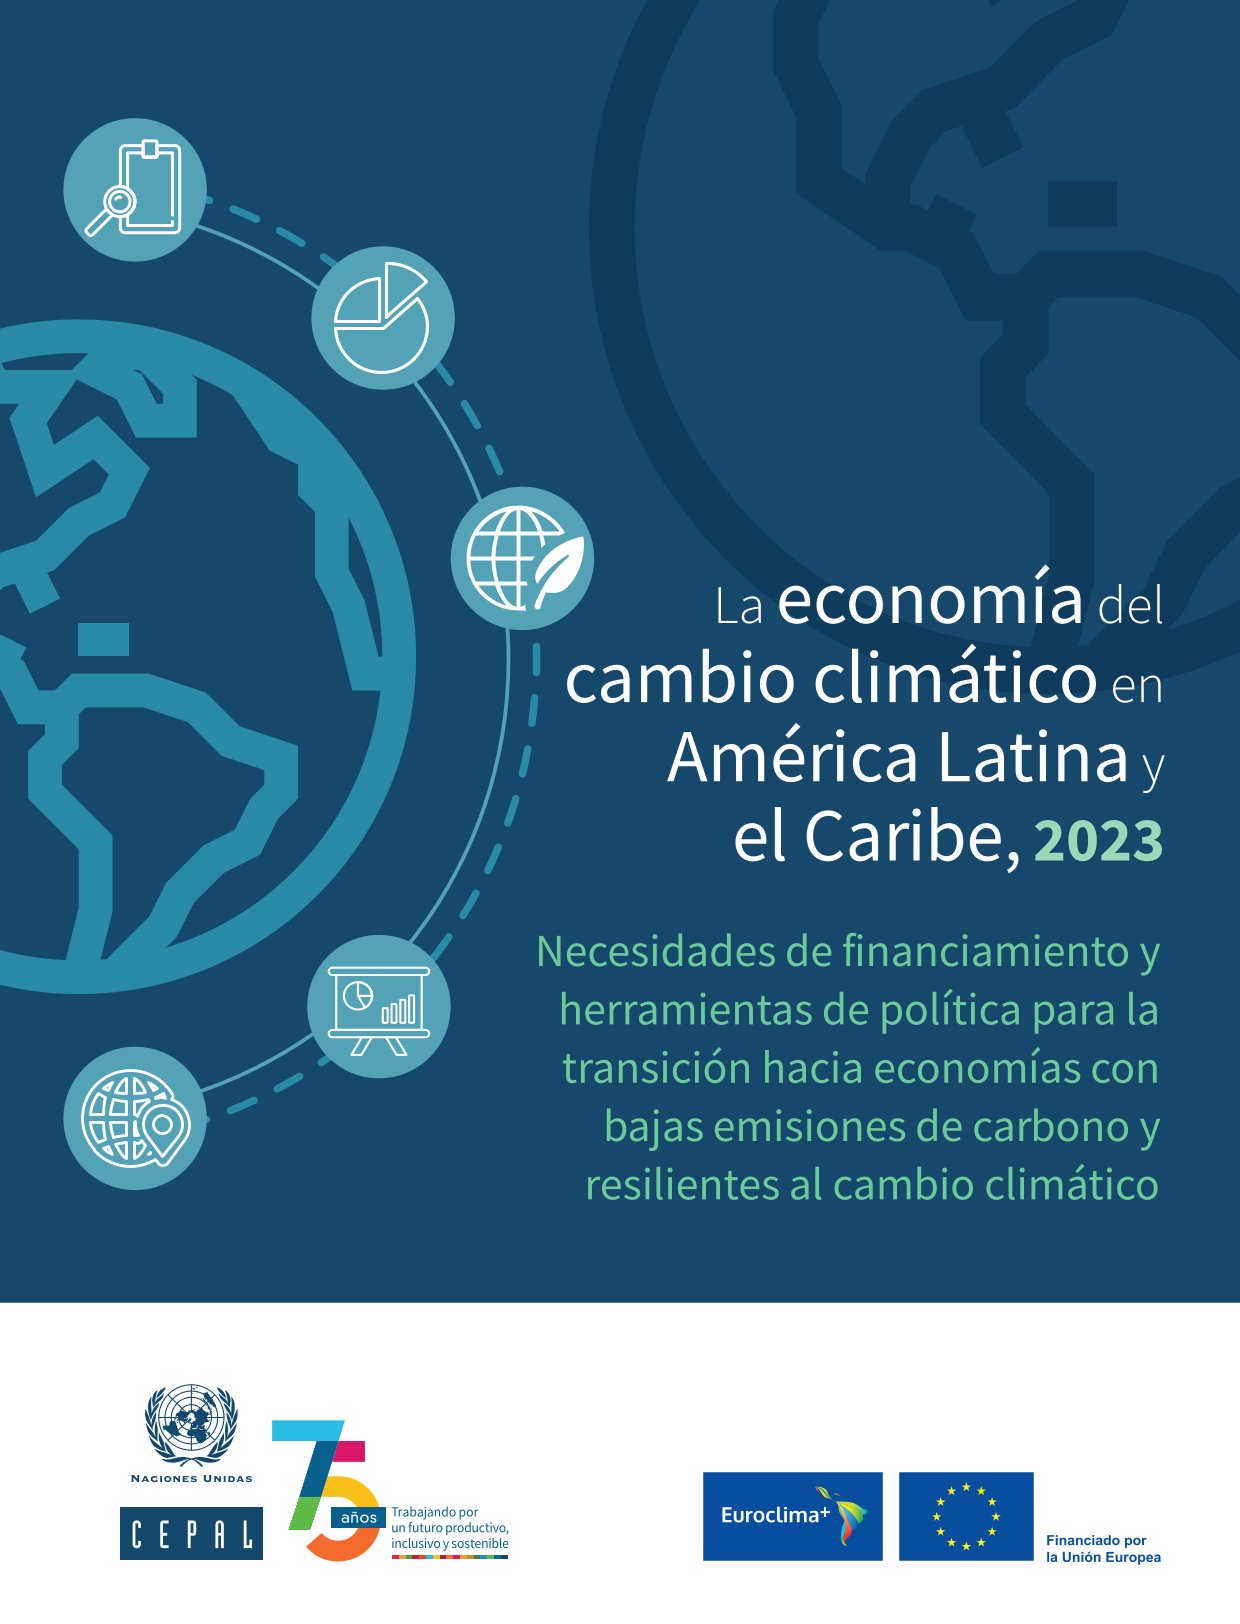 La economía del cambio climático en ALC – CEPAL, 2023.